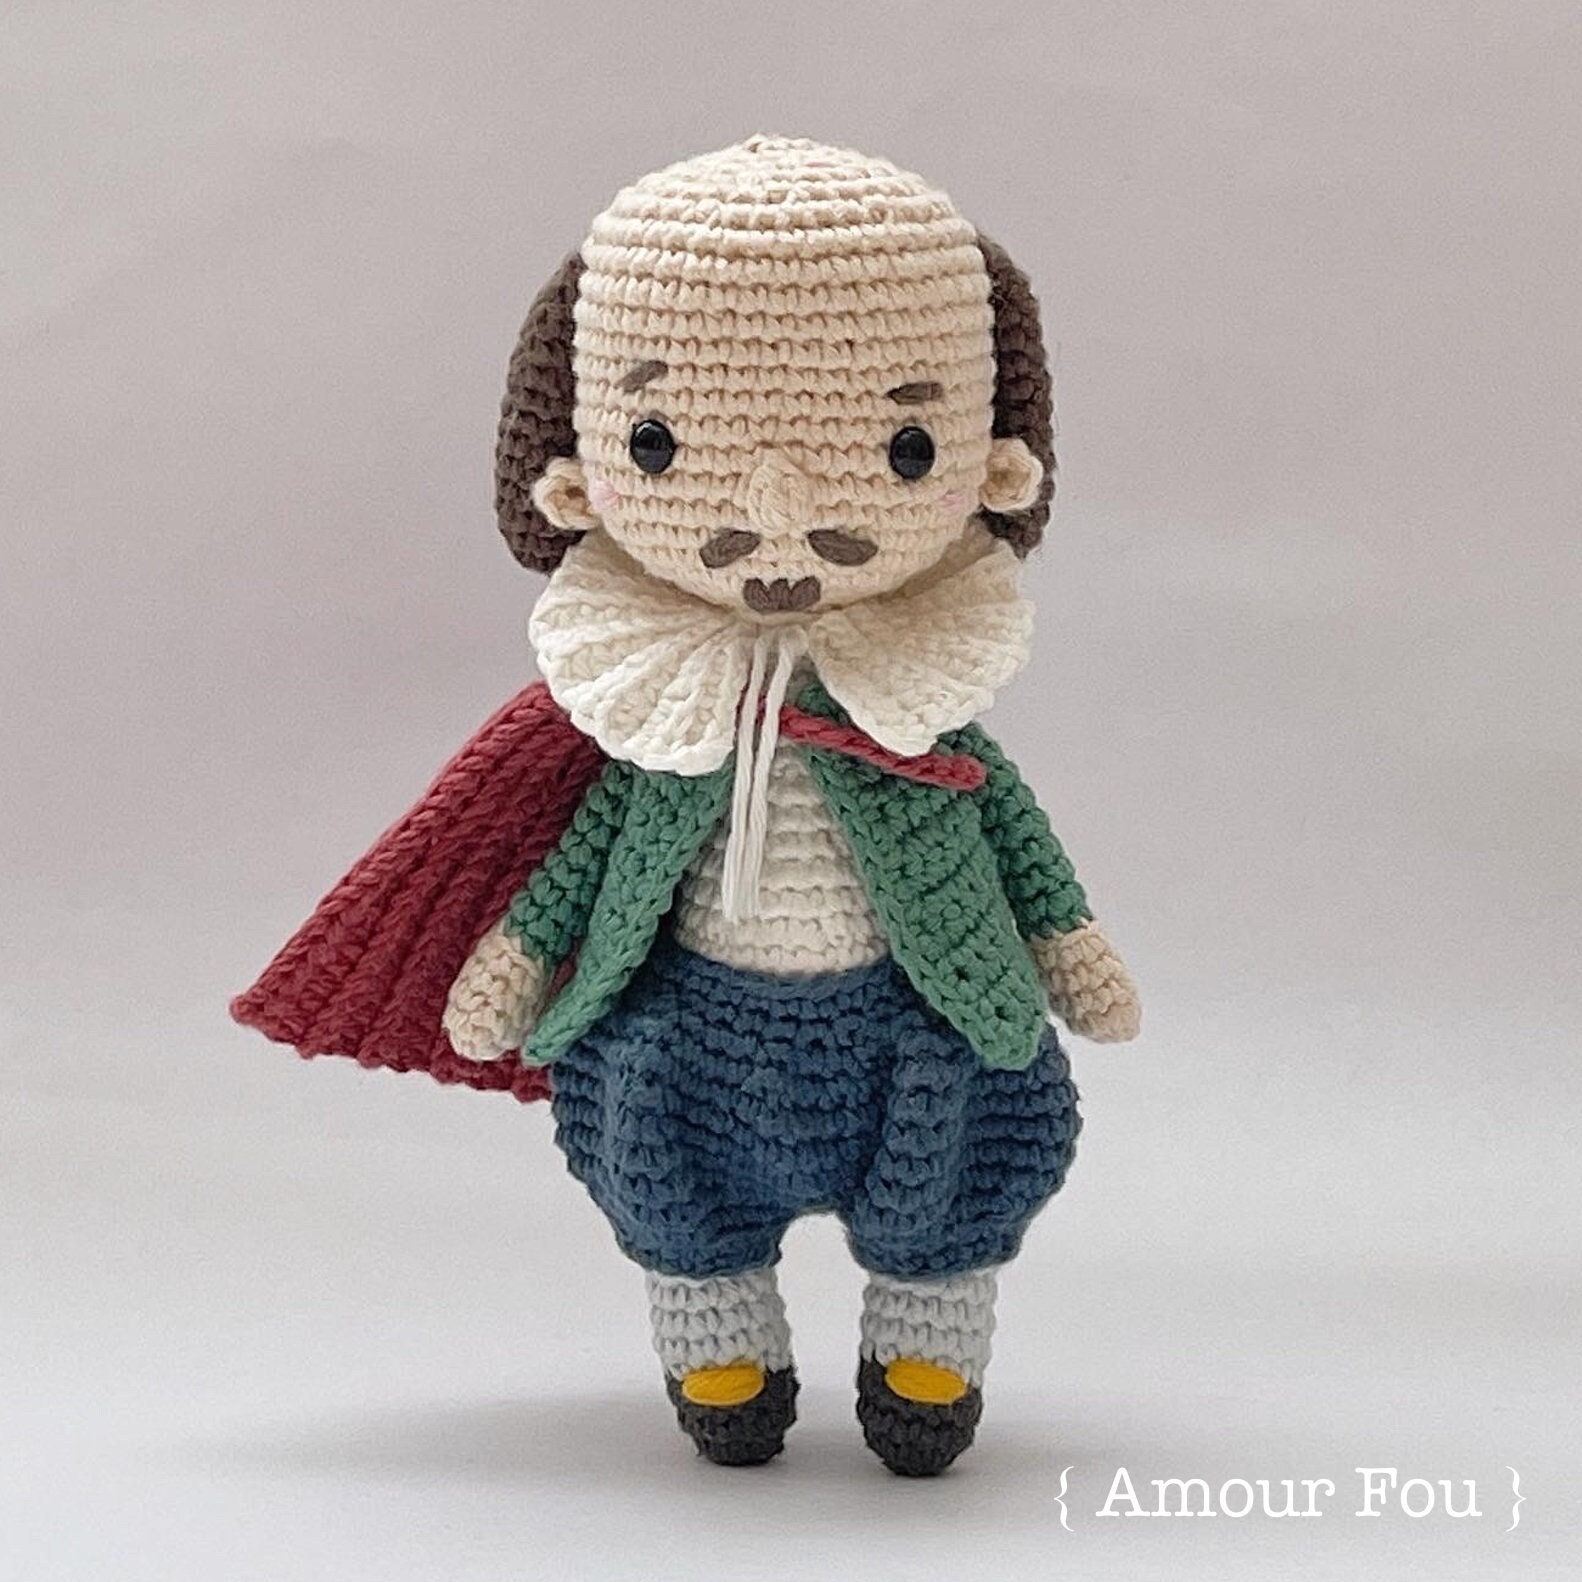 MONTKIARA Lot de 100 crochets à tricoter pour débutants avec étui